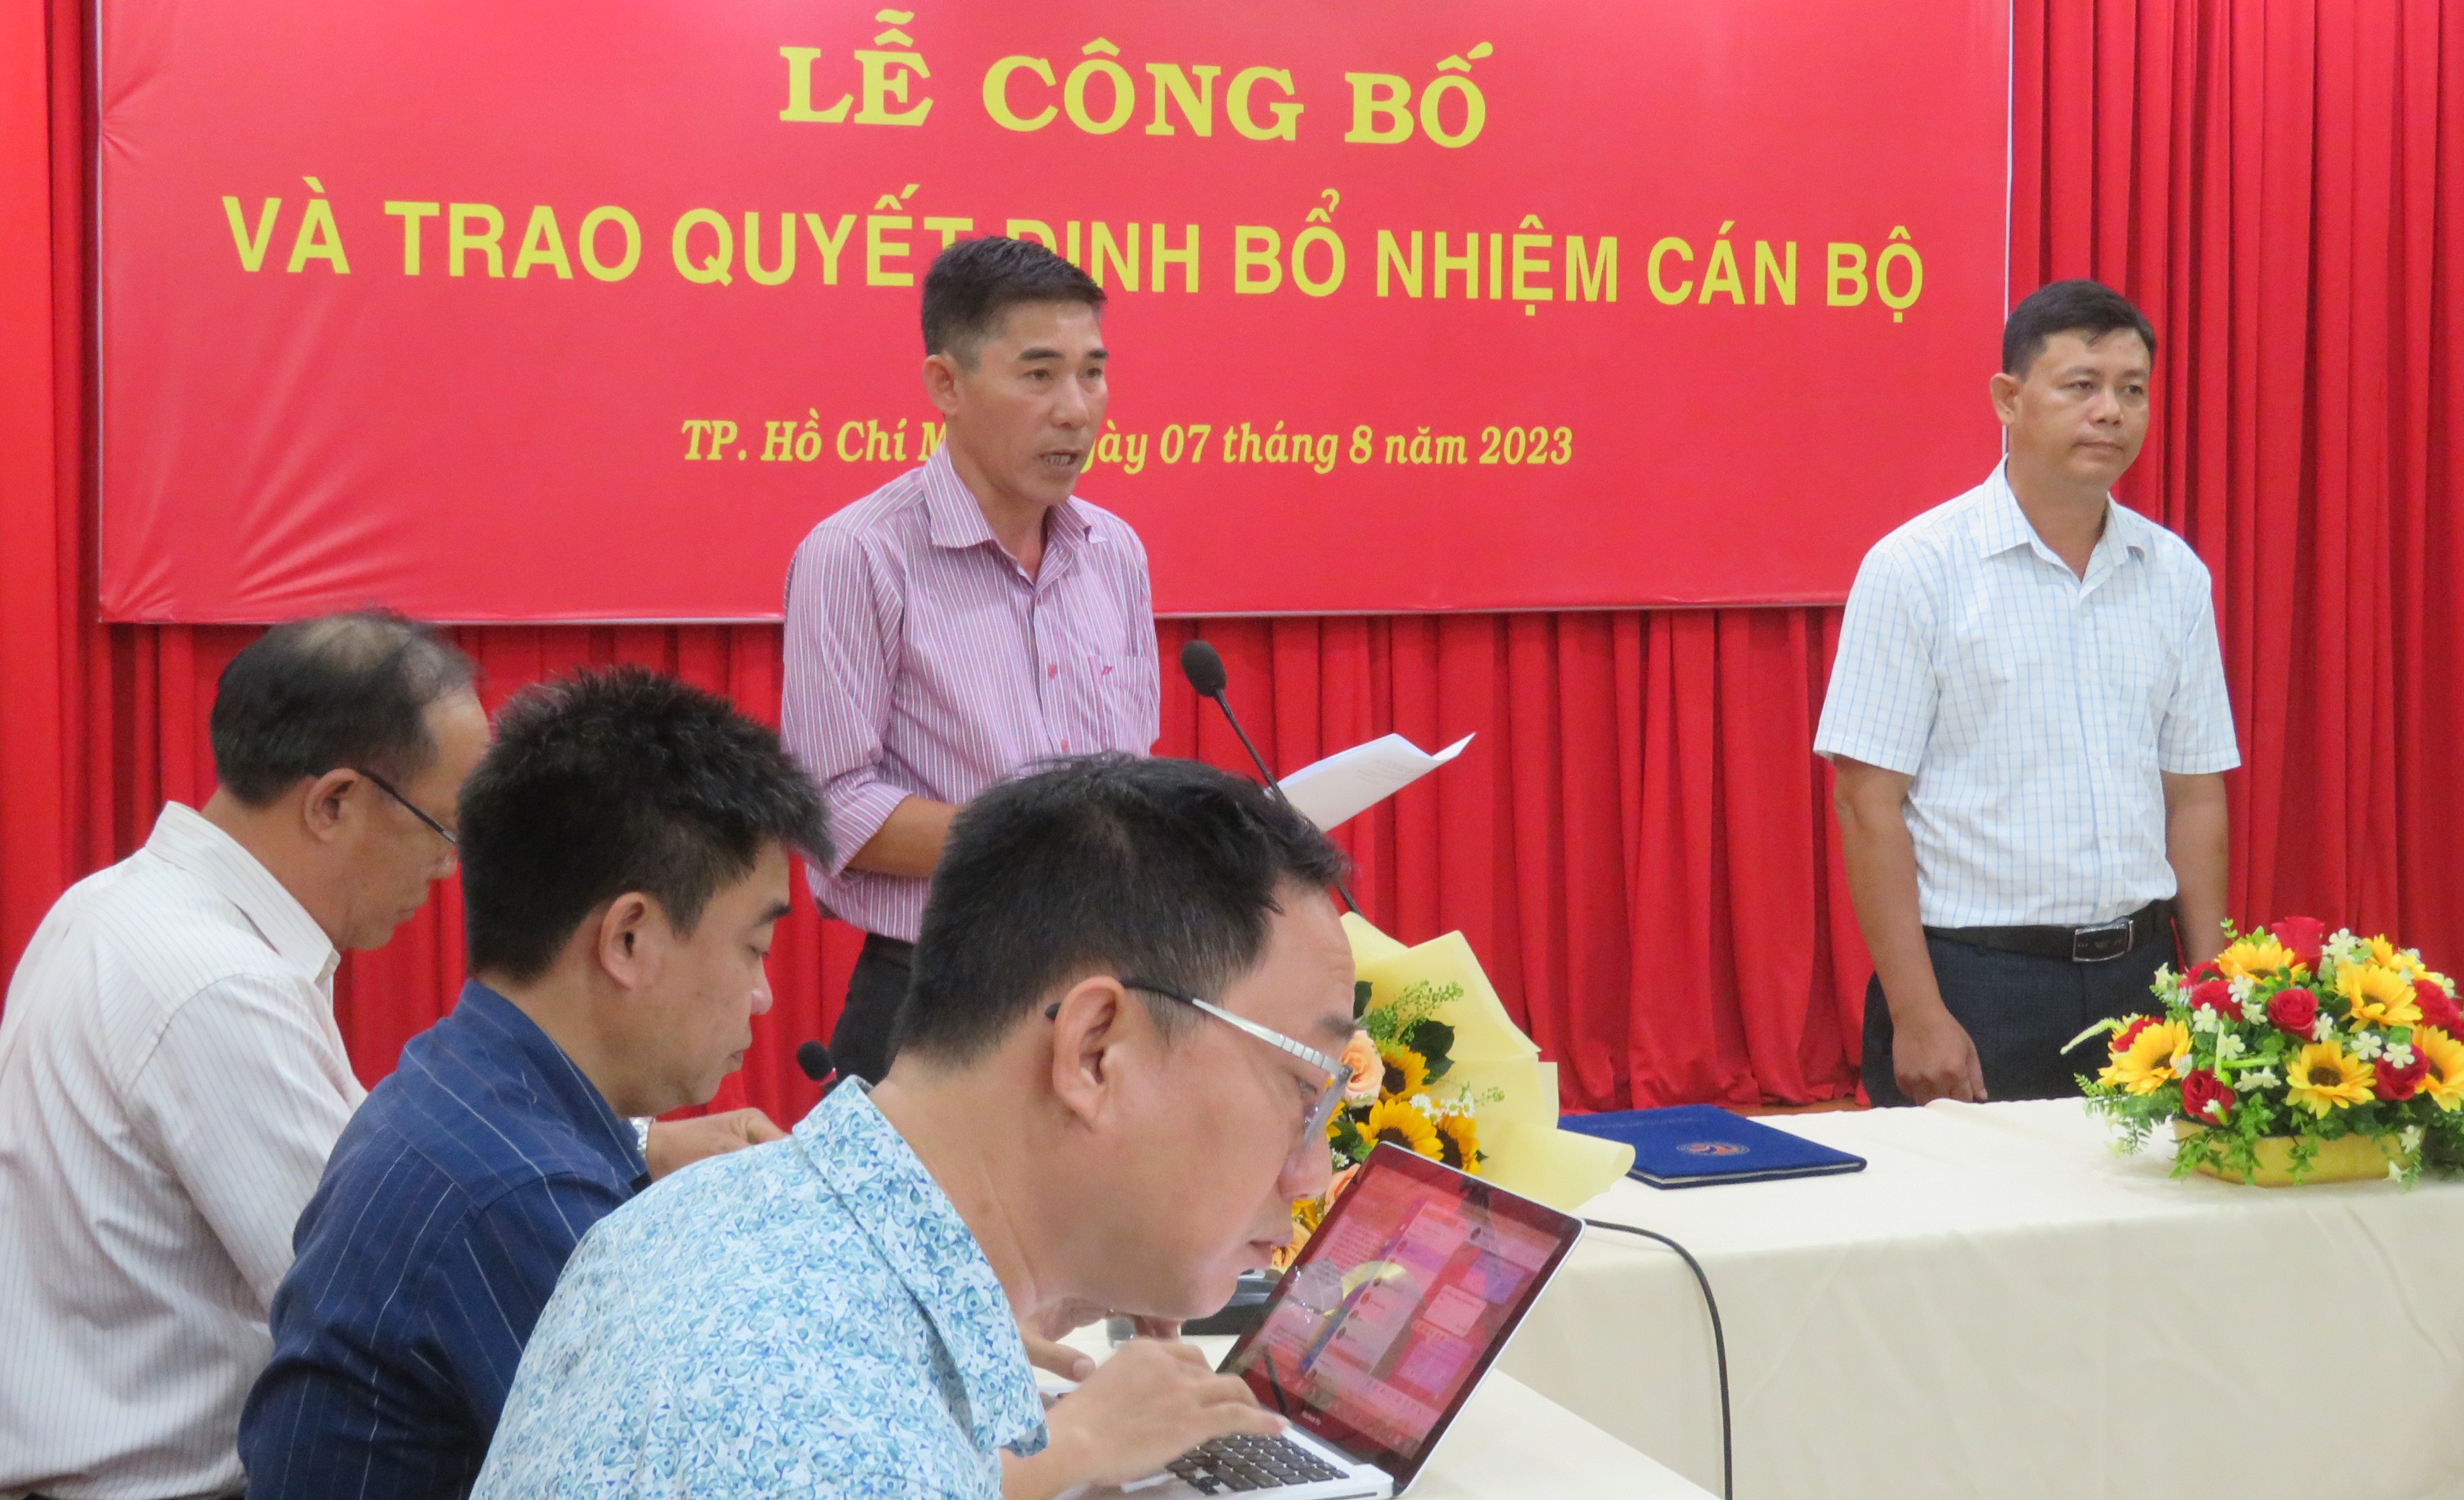 bet365 mobile bet
. Hồ Chí Minh công bố Quyết định bổ nhiệm Phó Trưởng khoa Kiến thức cơ bản